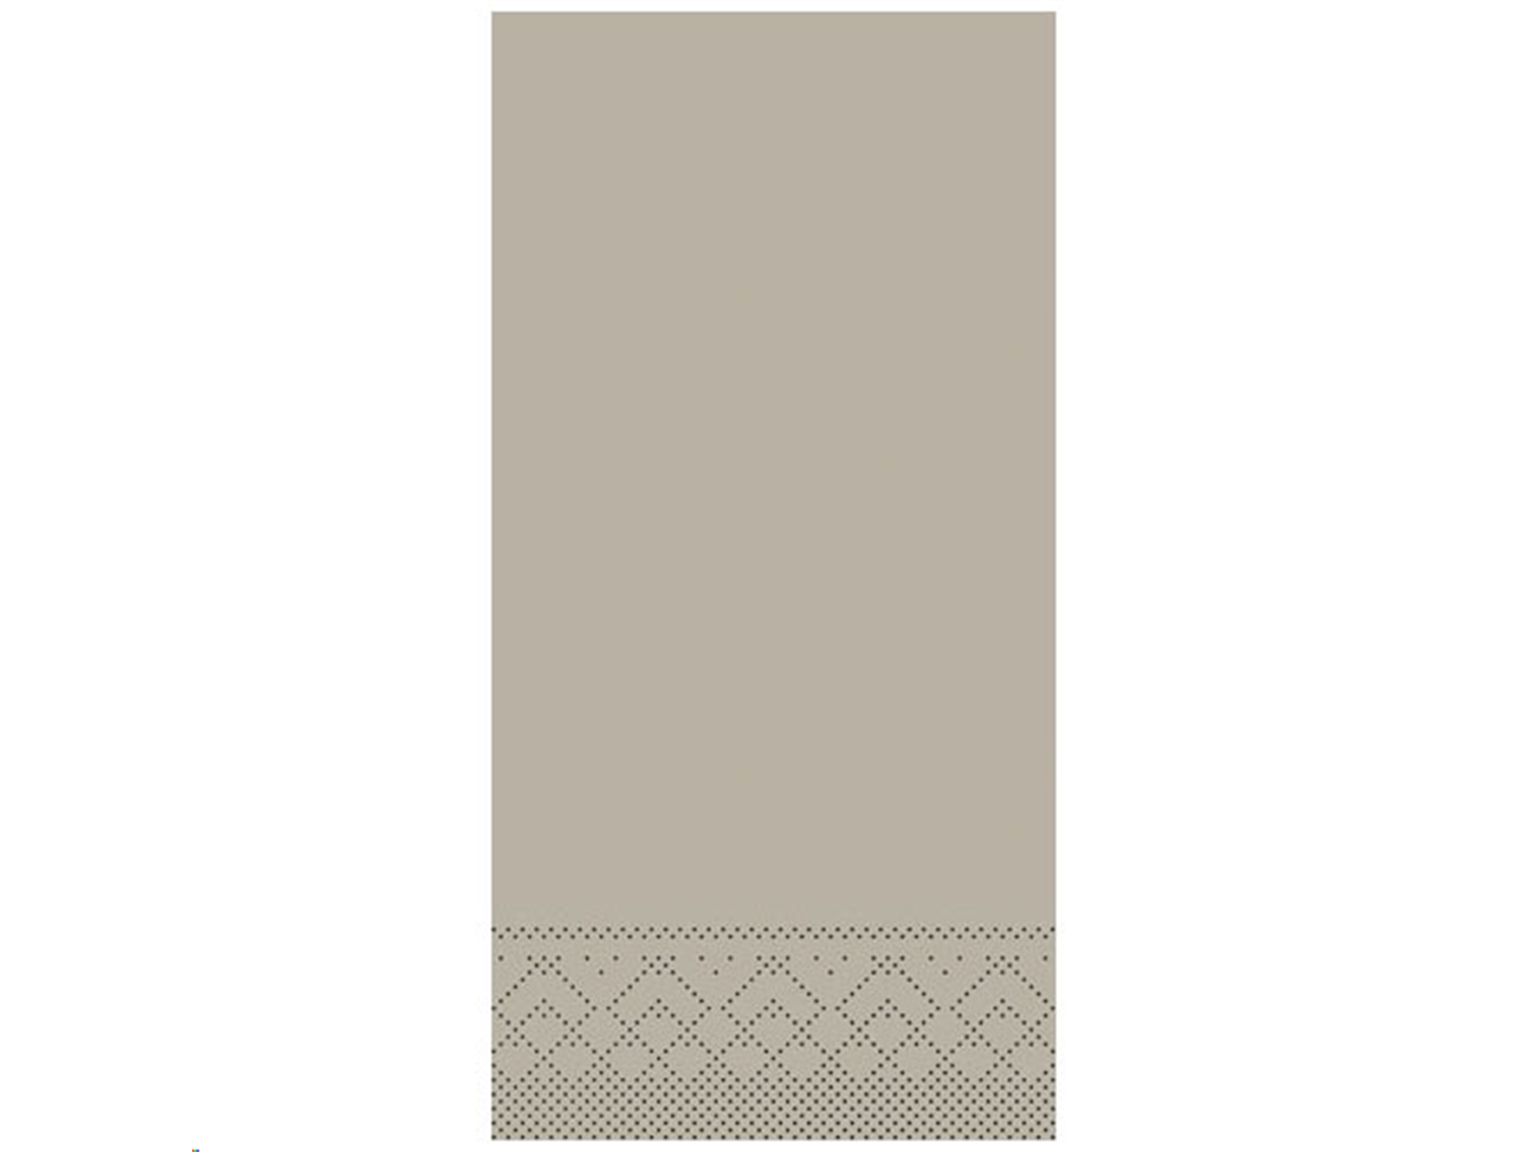 SERVIETTEN TISSUE  33 x 33 cm, UNI, beige-grey